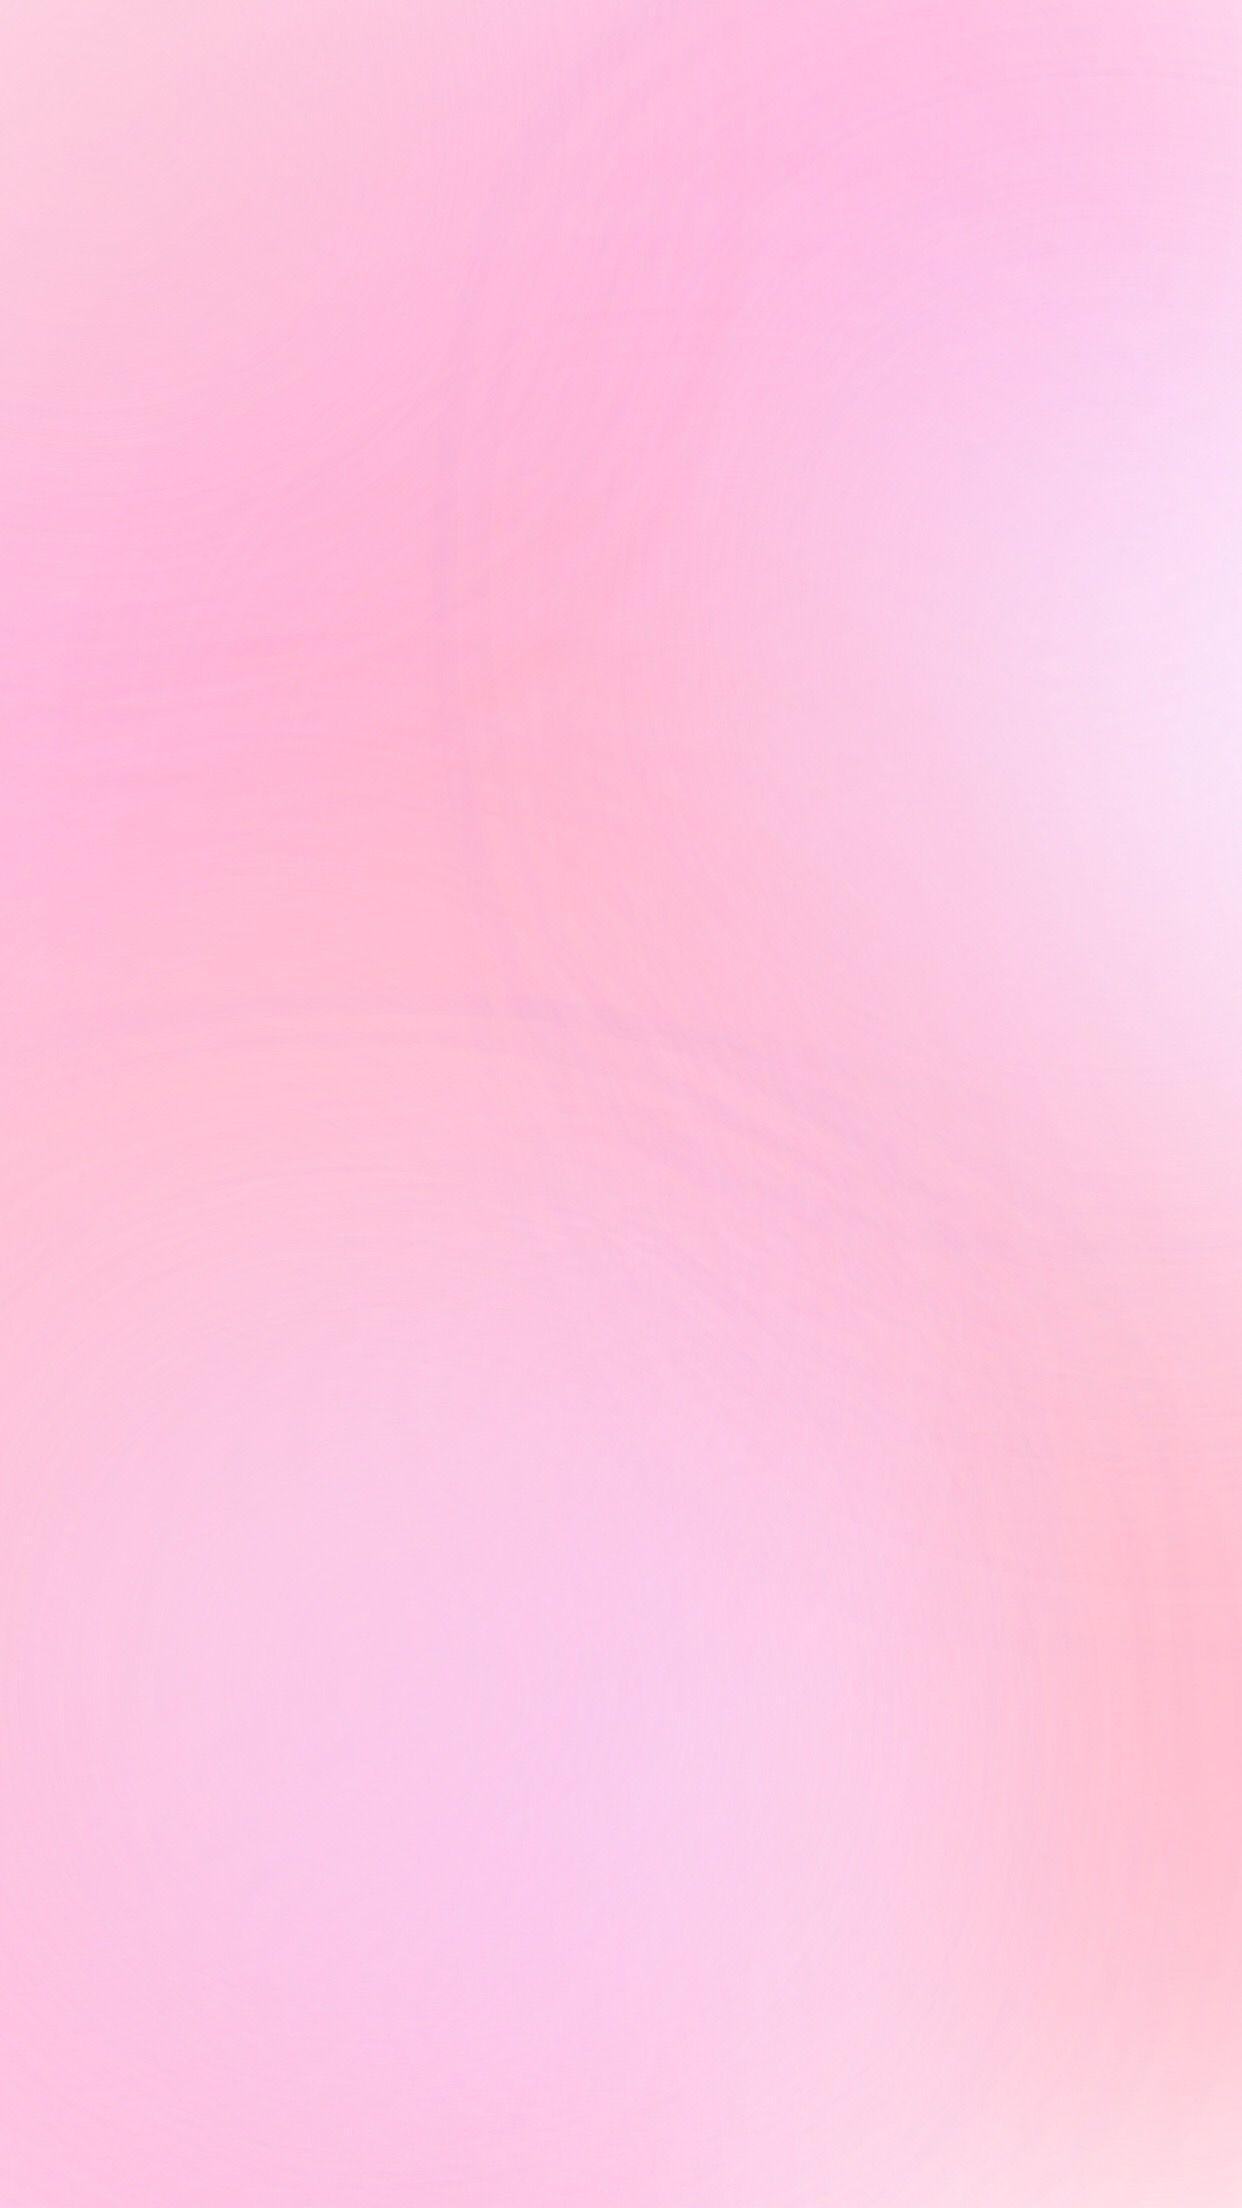 1242x2208 Hình nền điện thoại ombre (gradient) màu hồng phấn.  Hình nền điện thoại